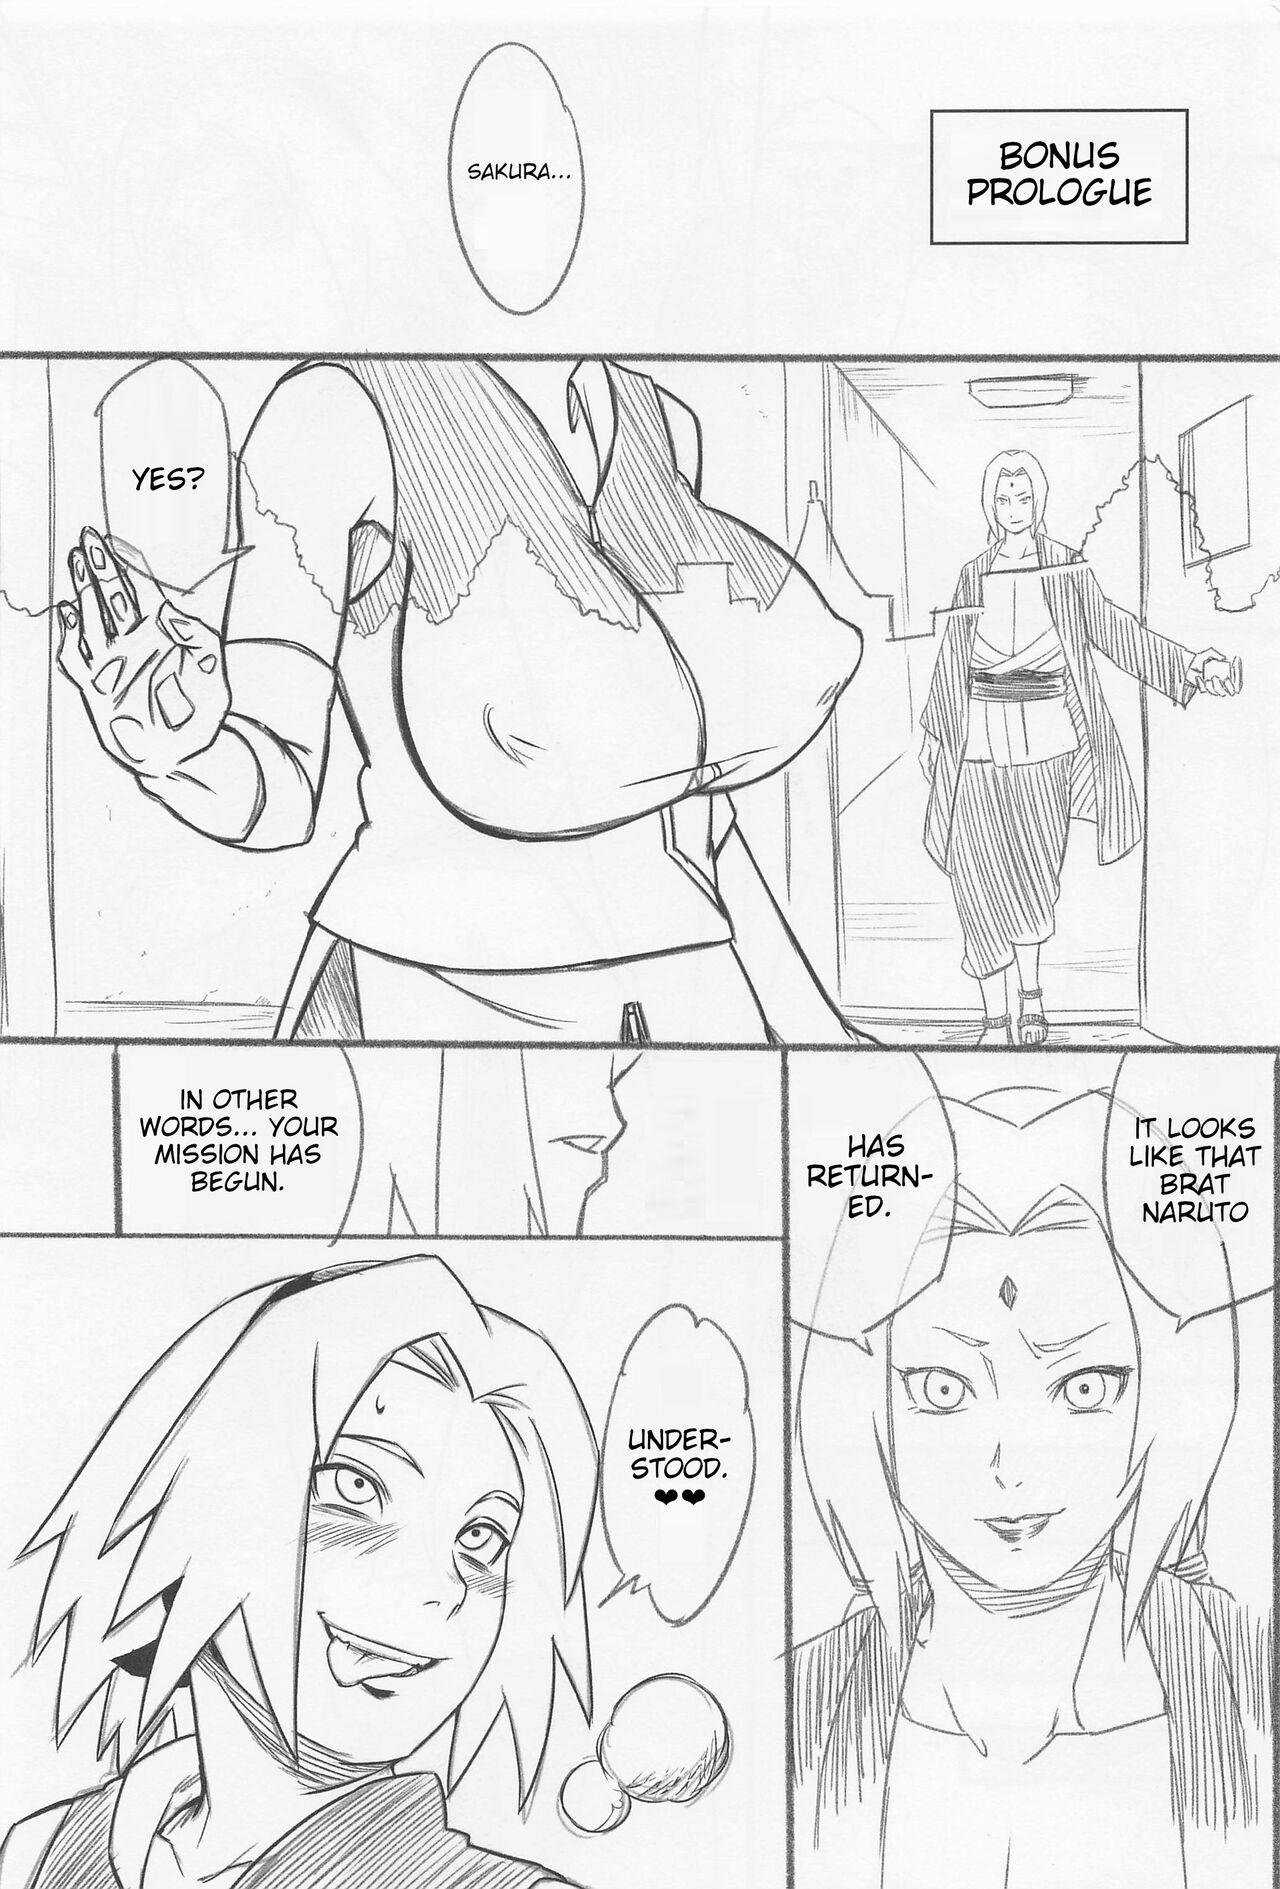 Erotic Hyakugo no Jutsu - Naruto Threeway - Page 2